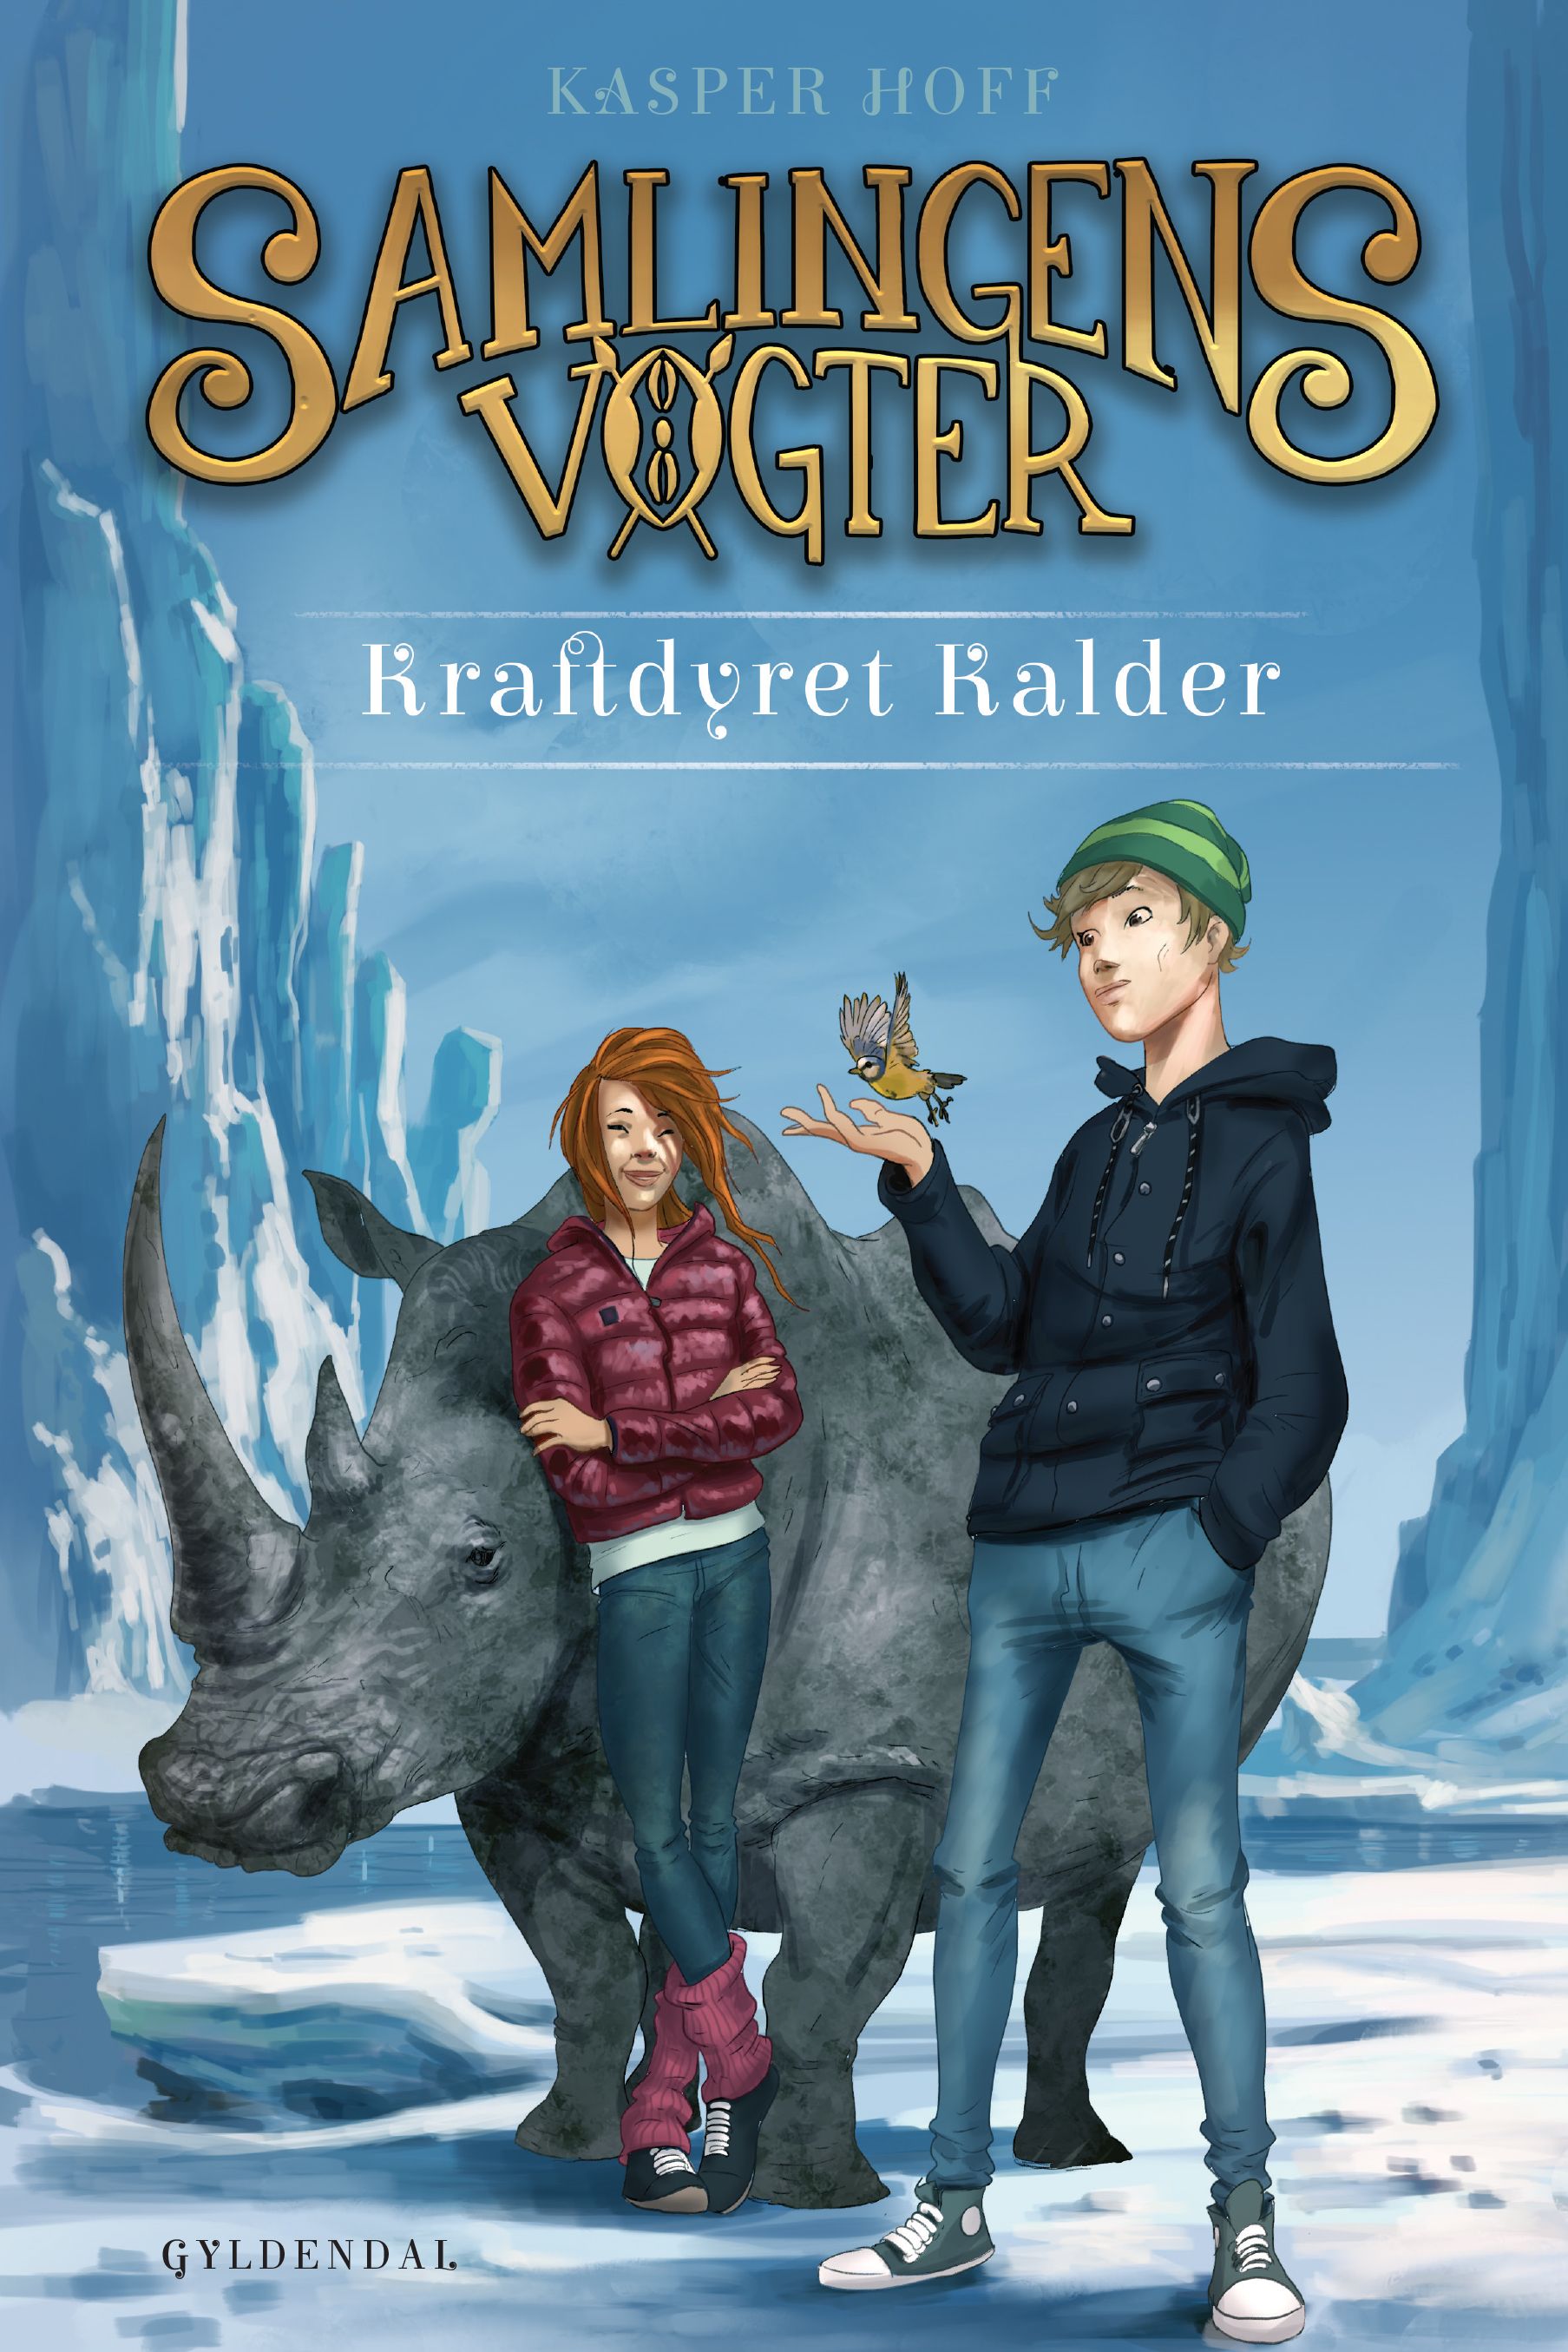 Samlingens Vogter 3 - Kraftdyret Kalder, e-bok av Kasper Hoff